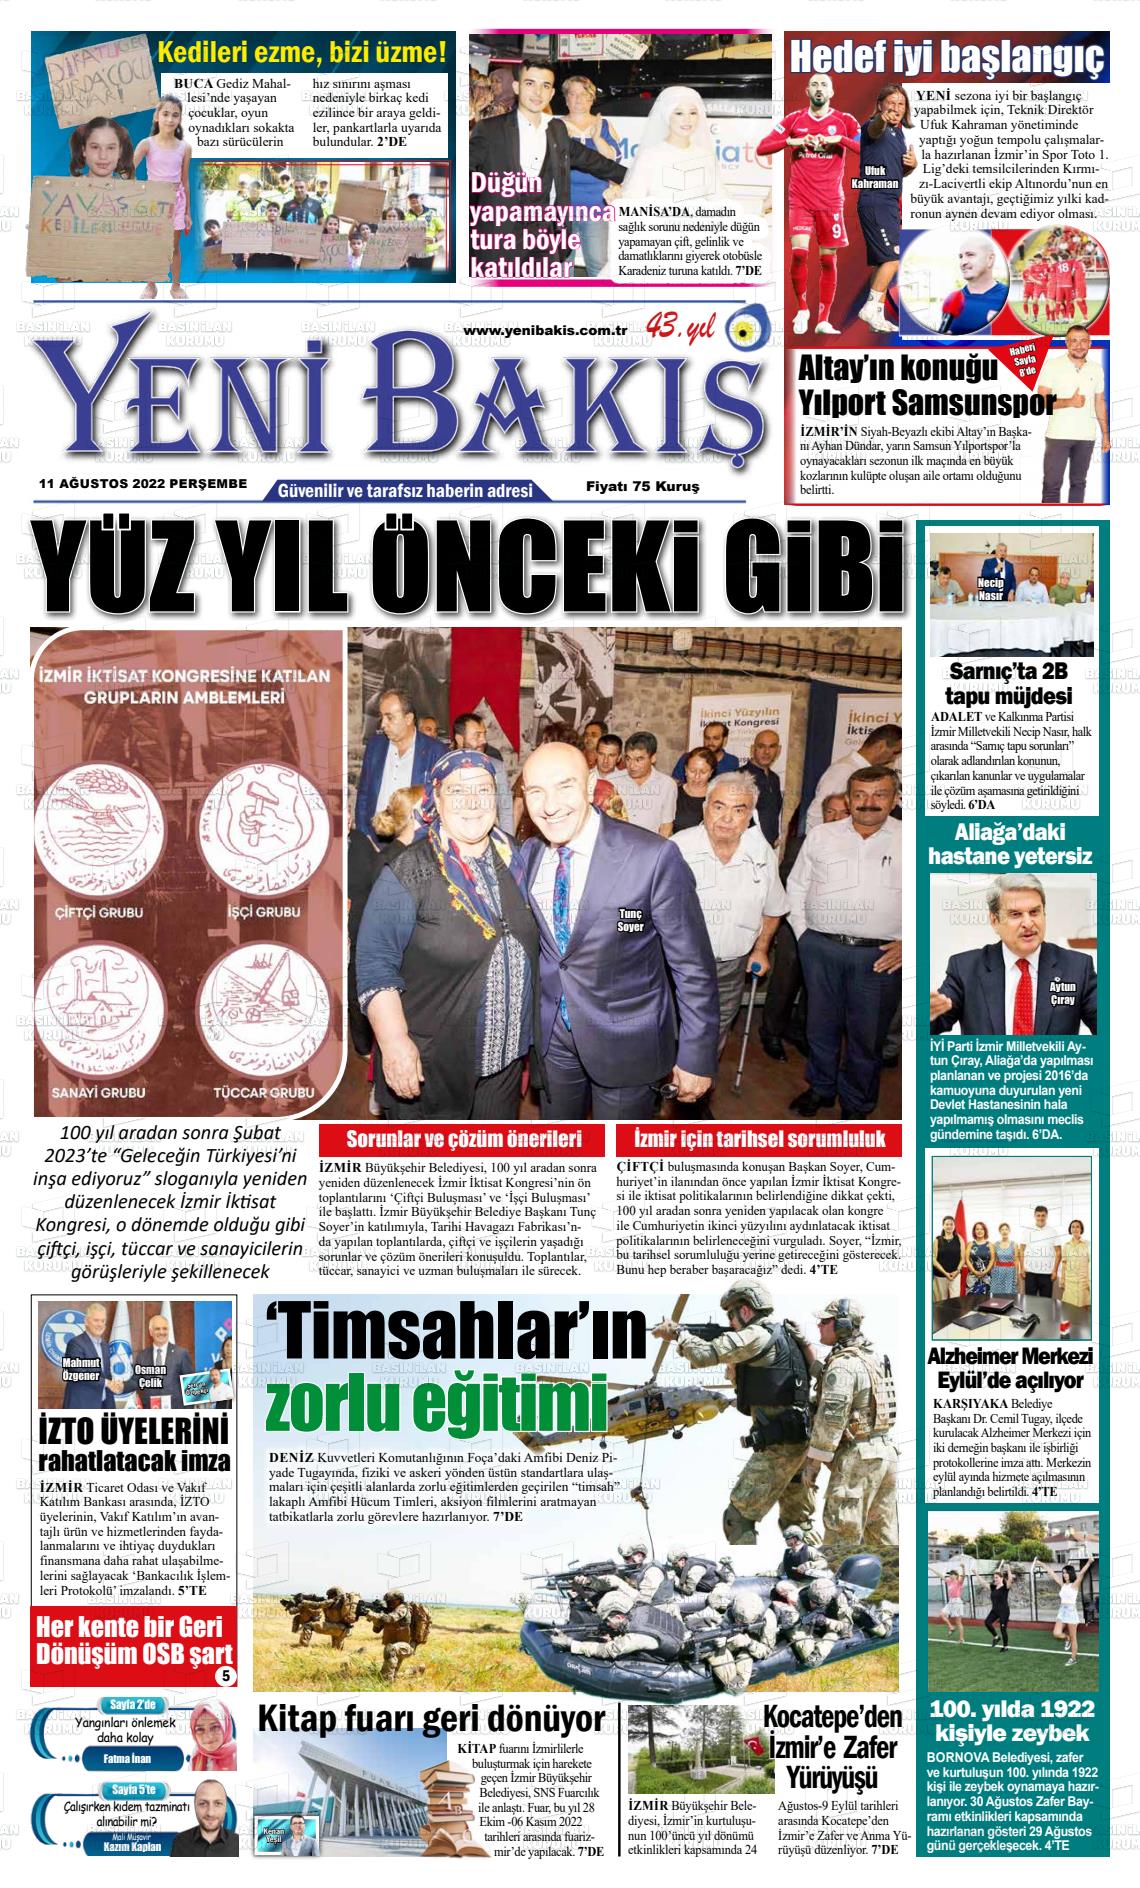 11 Ağustos 2022 Yeni Bakış Gazete Manşeti